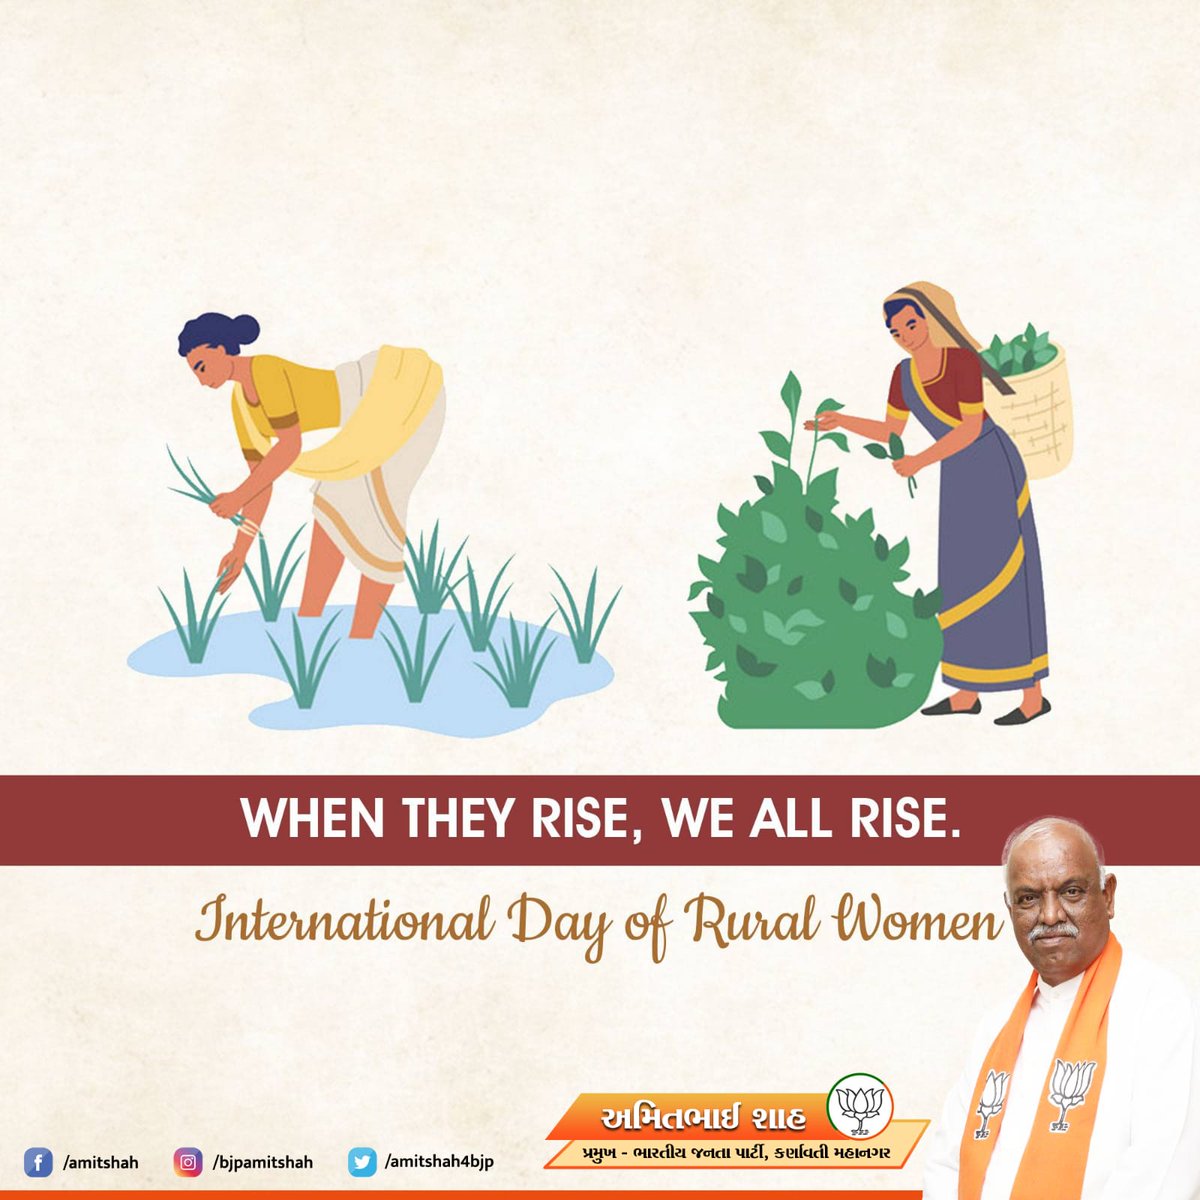 #InternationalDayOfRuralWomen 
When They Rise, We All Rise